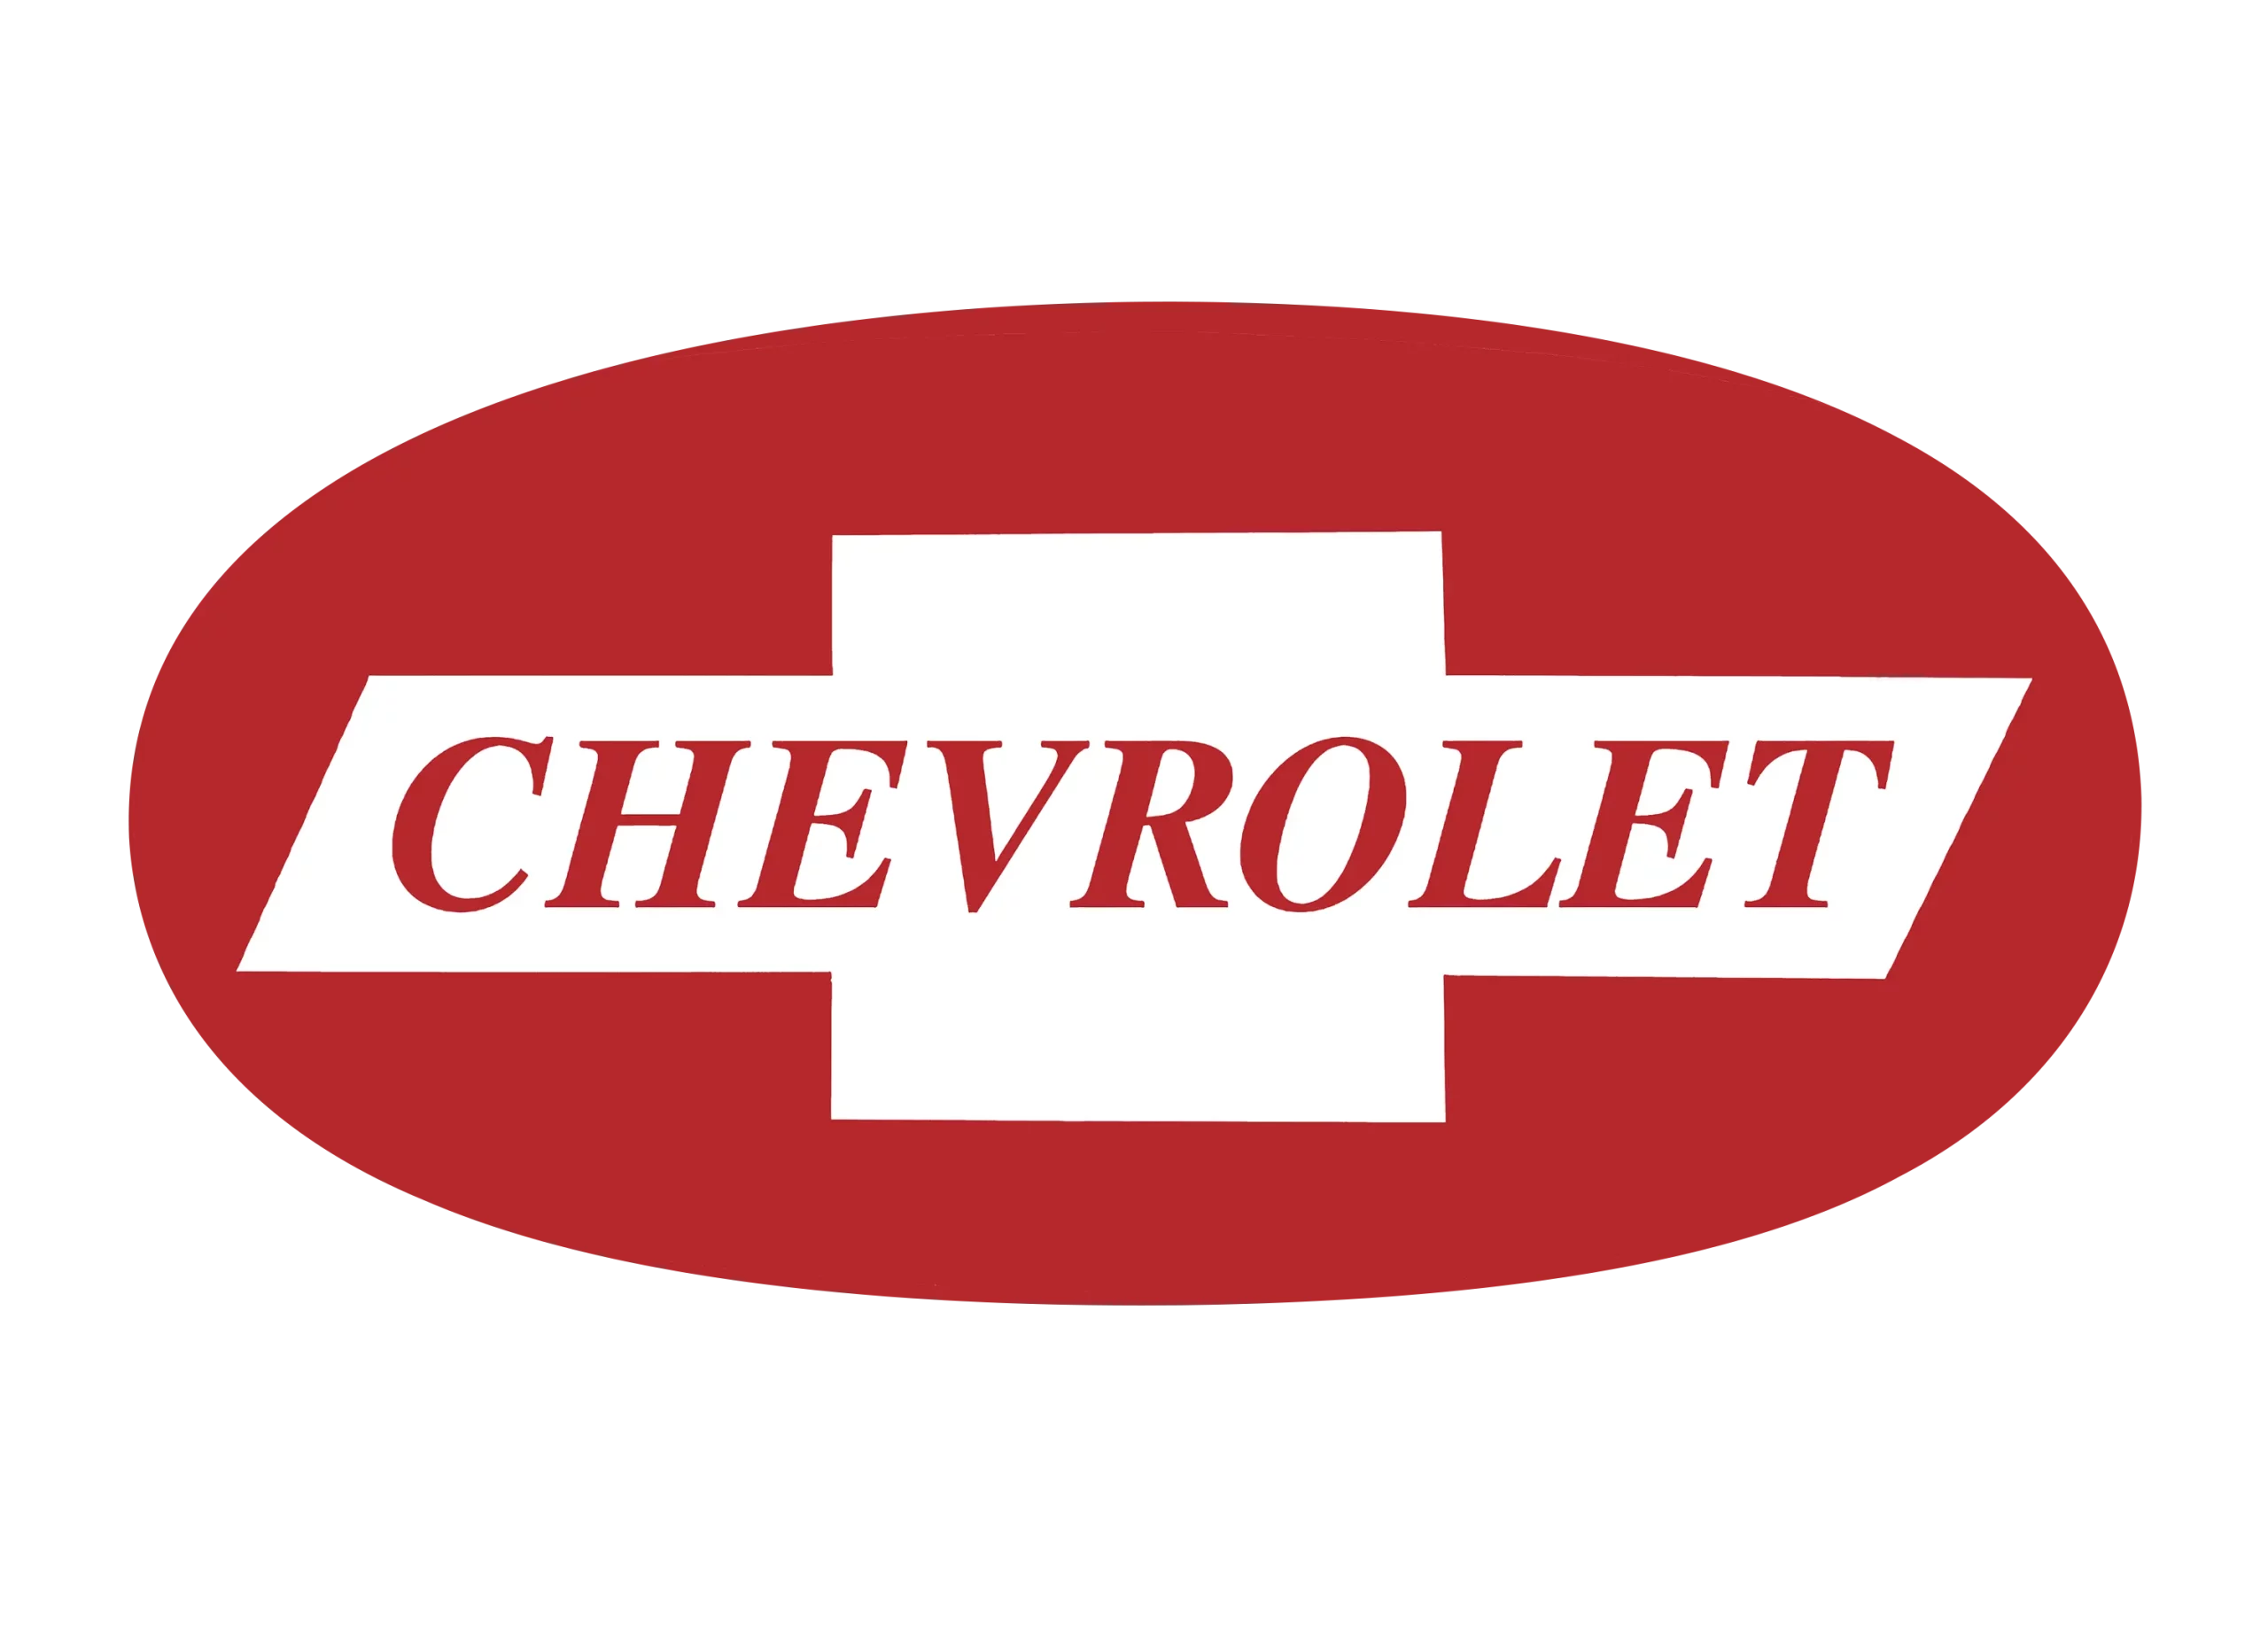 Chevrolet logo 1950-1964